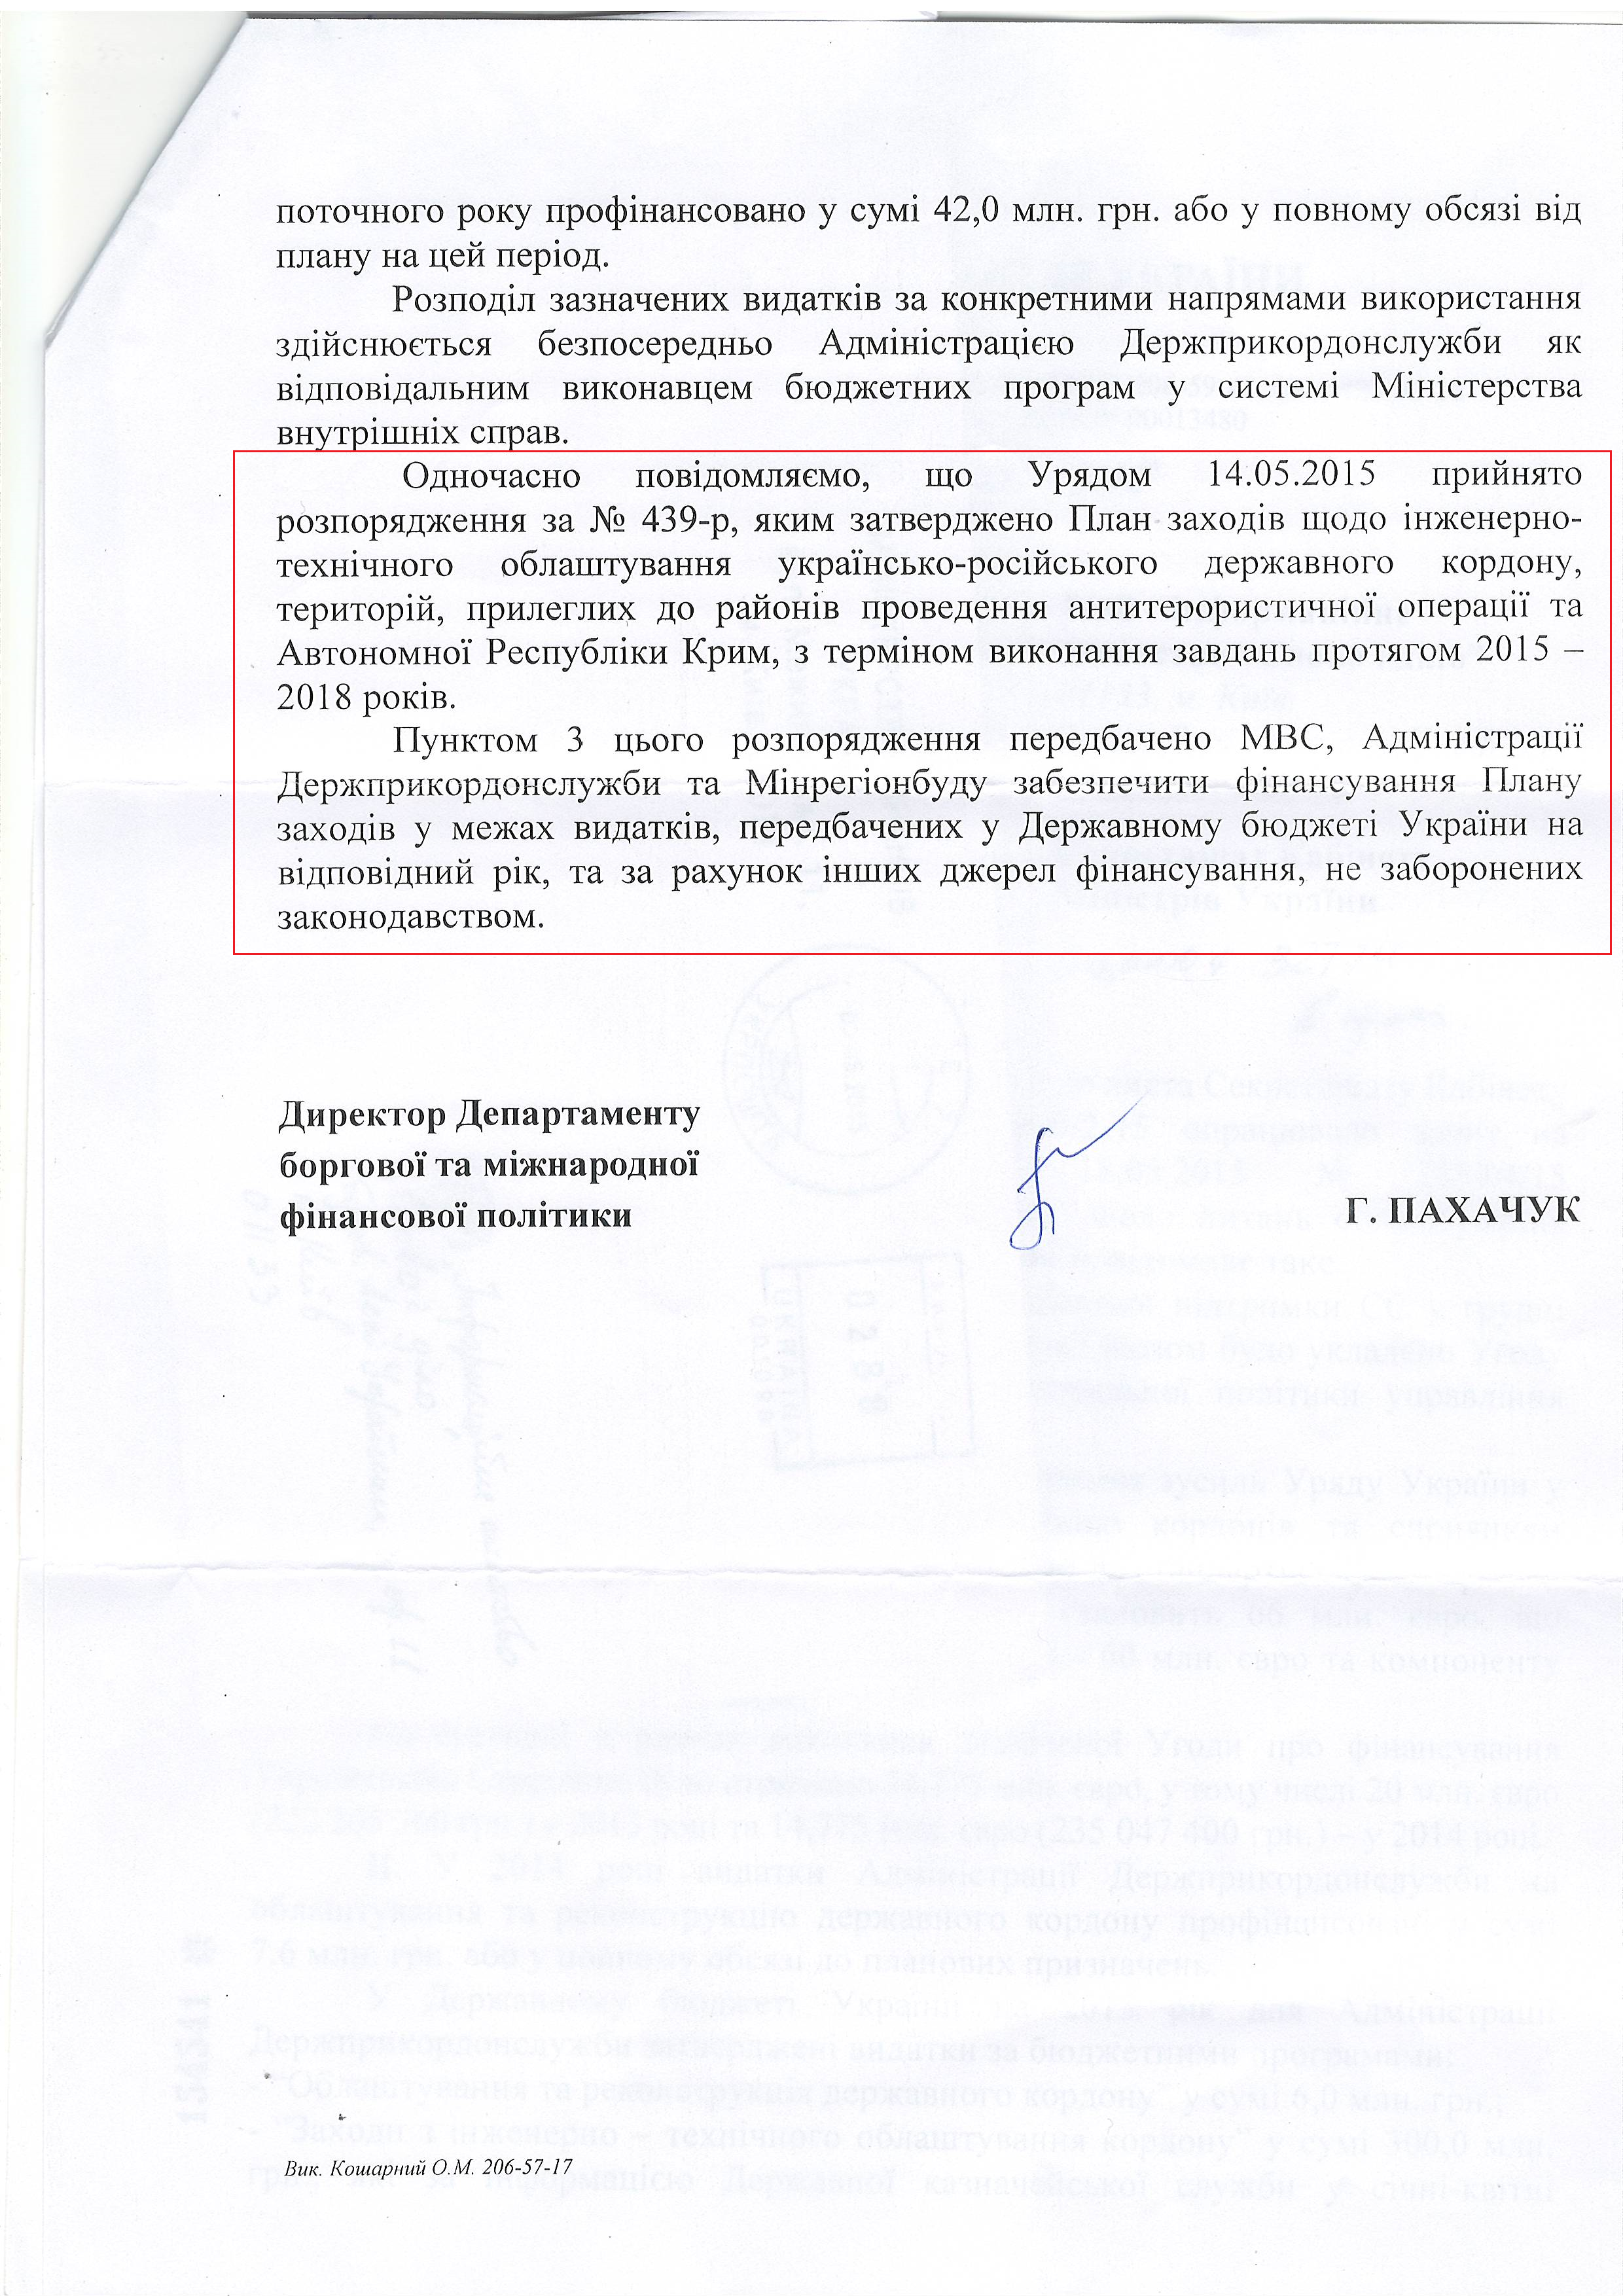 лист міністерства фінансів України від 3 червня 2015 року